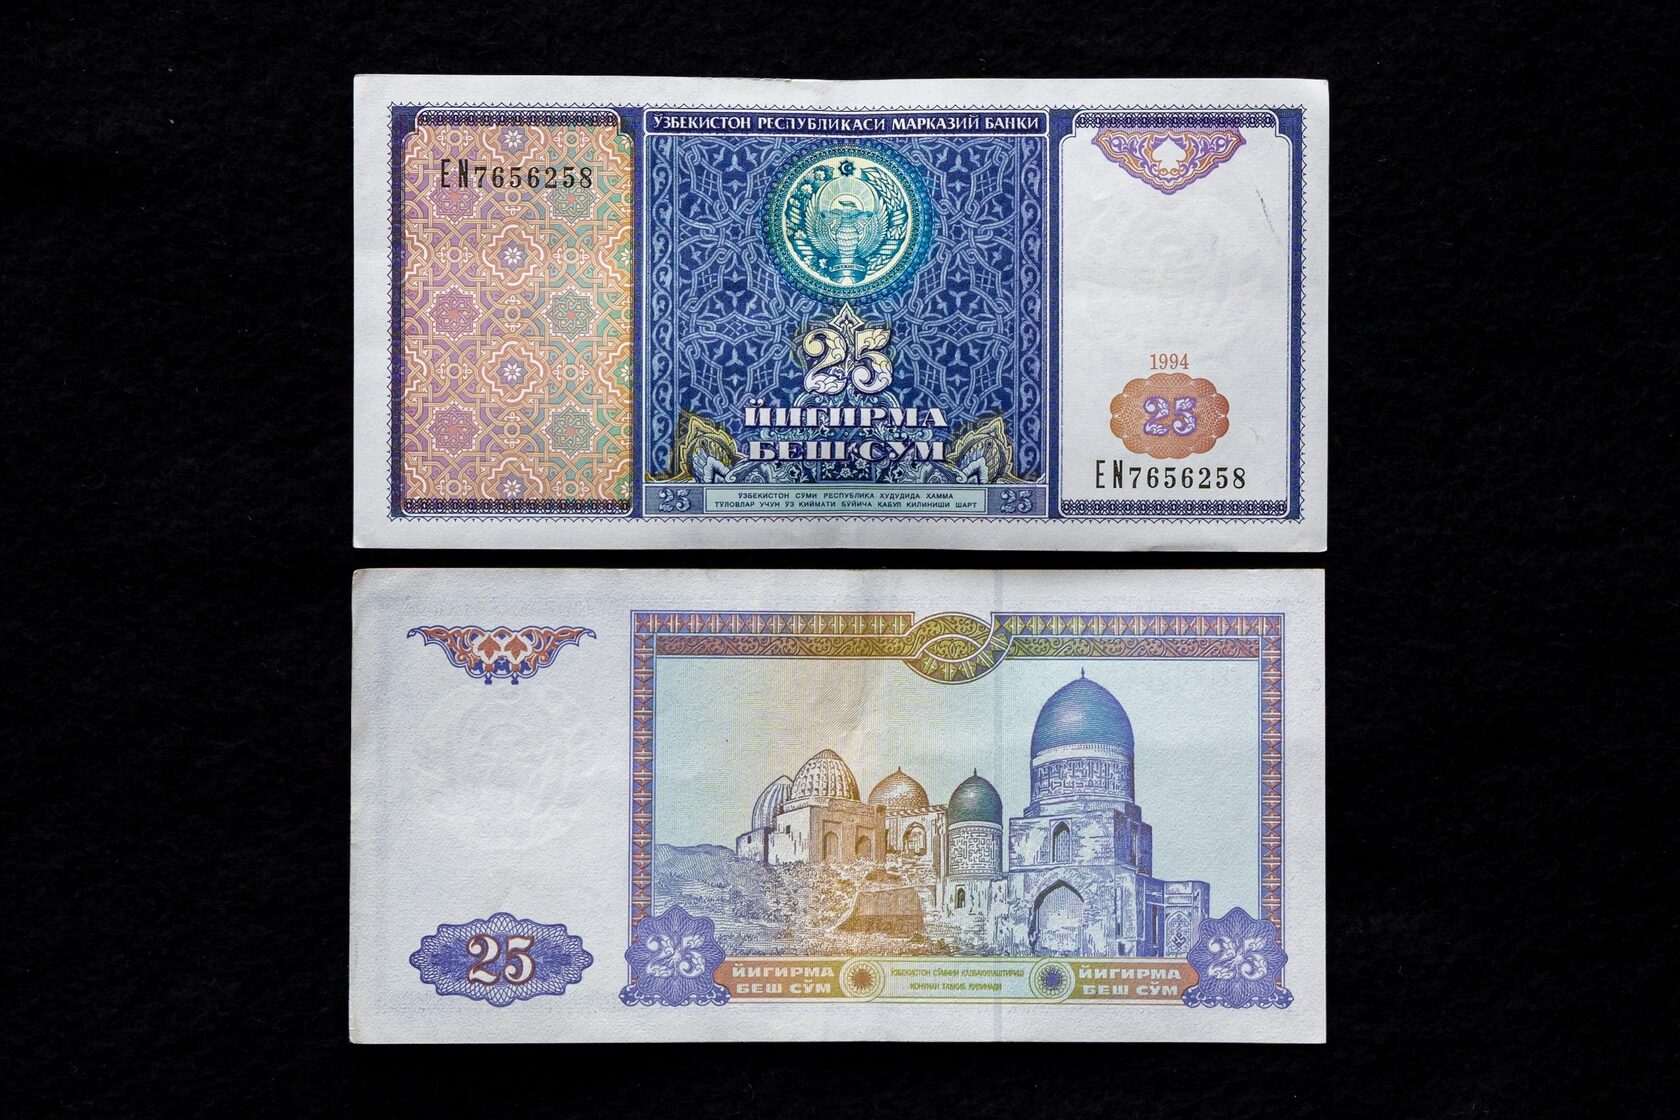 Узбекистан валюта сум. Узбекские Сумы купюры. Валюта Узбекистана sum. 500 Сўм. Банкнота 500 сум Узбекистан.